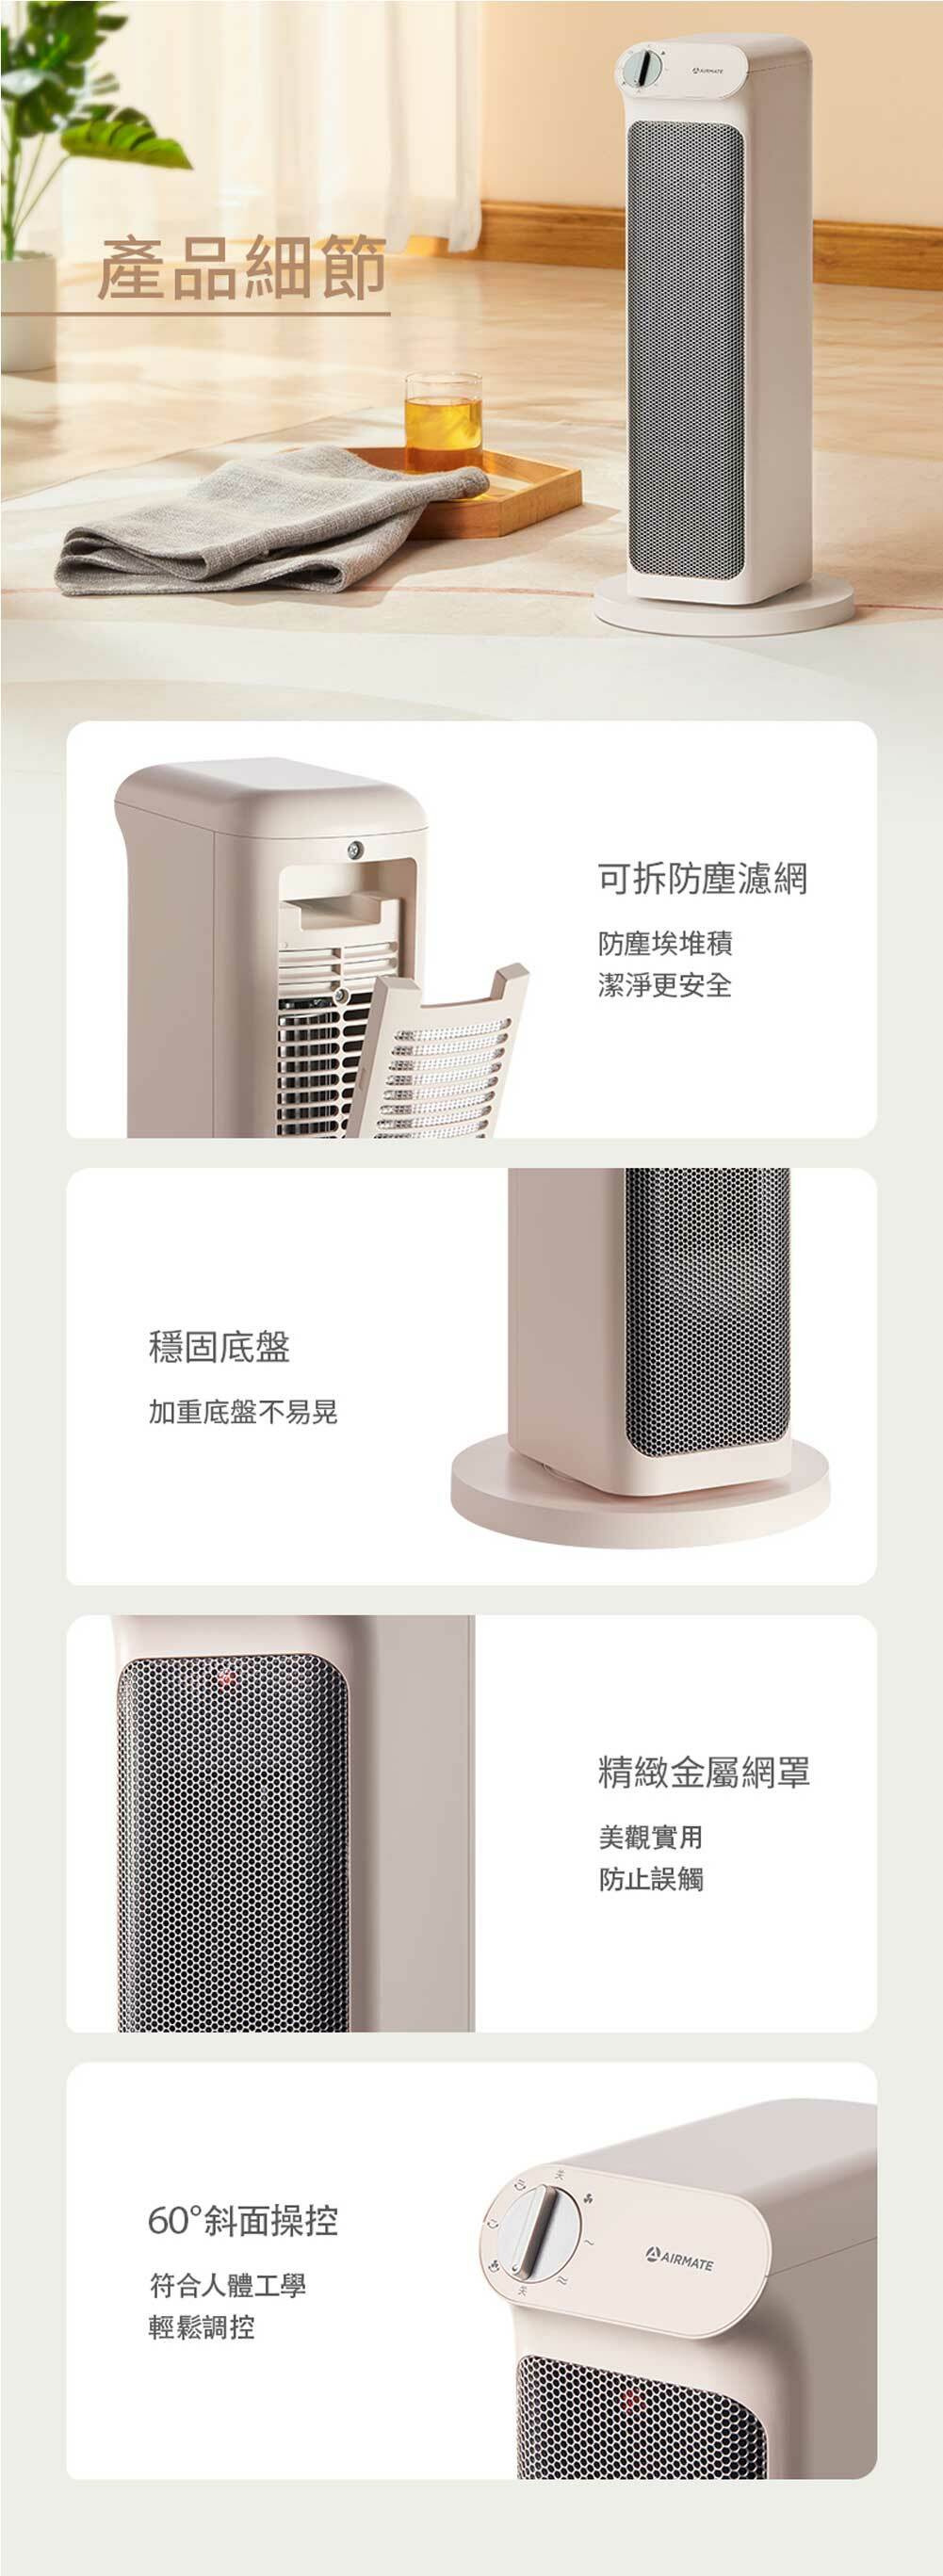 HP12006  立式石墨烯陶瓷電暖器 產品細節